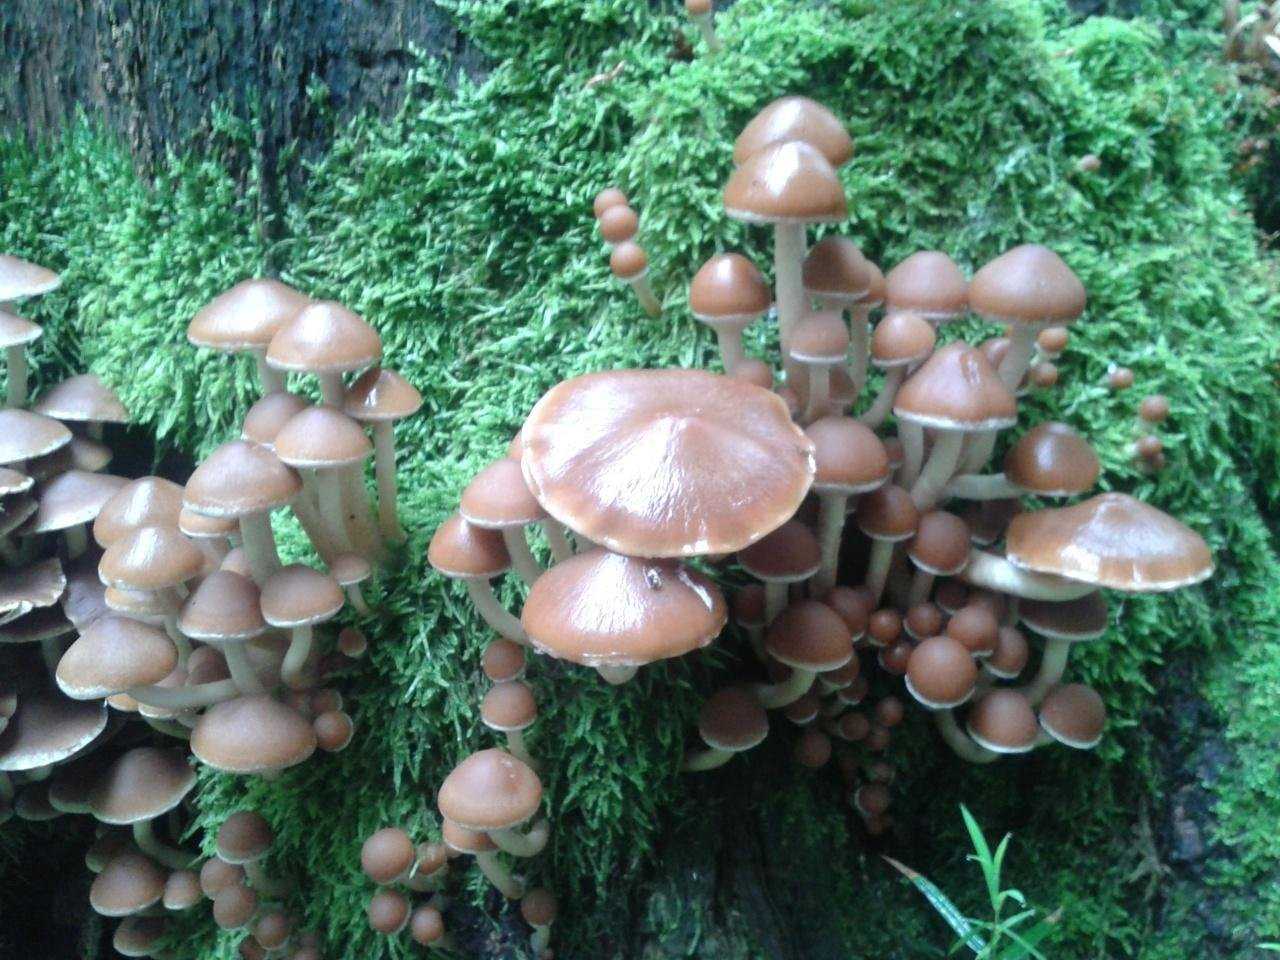 Псатирелла серо-бурая – гриб на дереве — викигриб